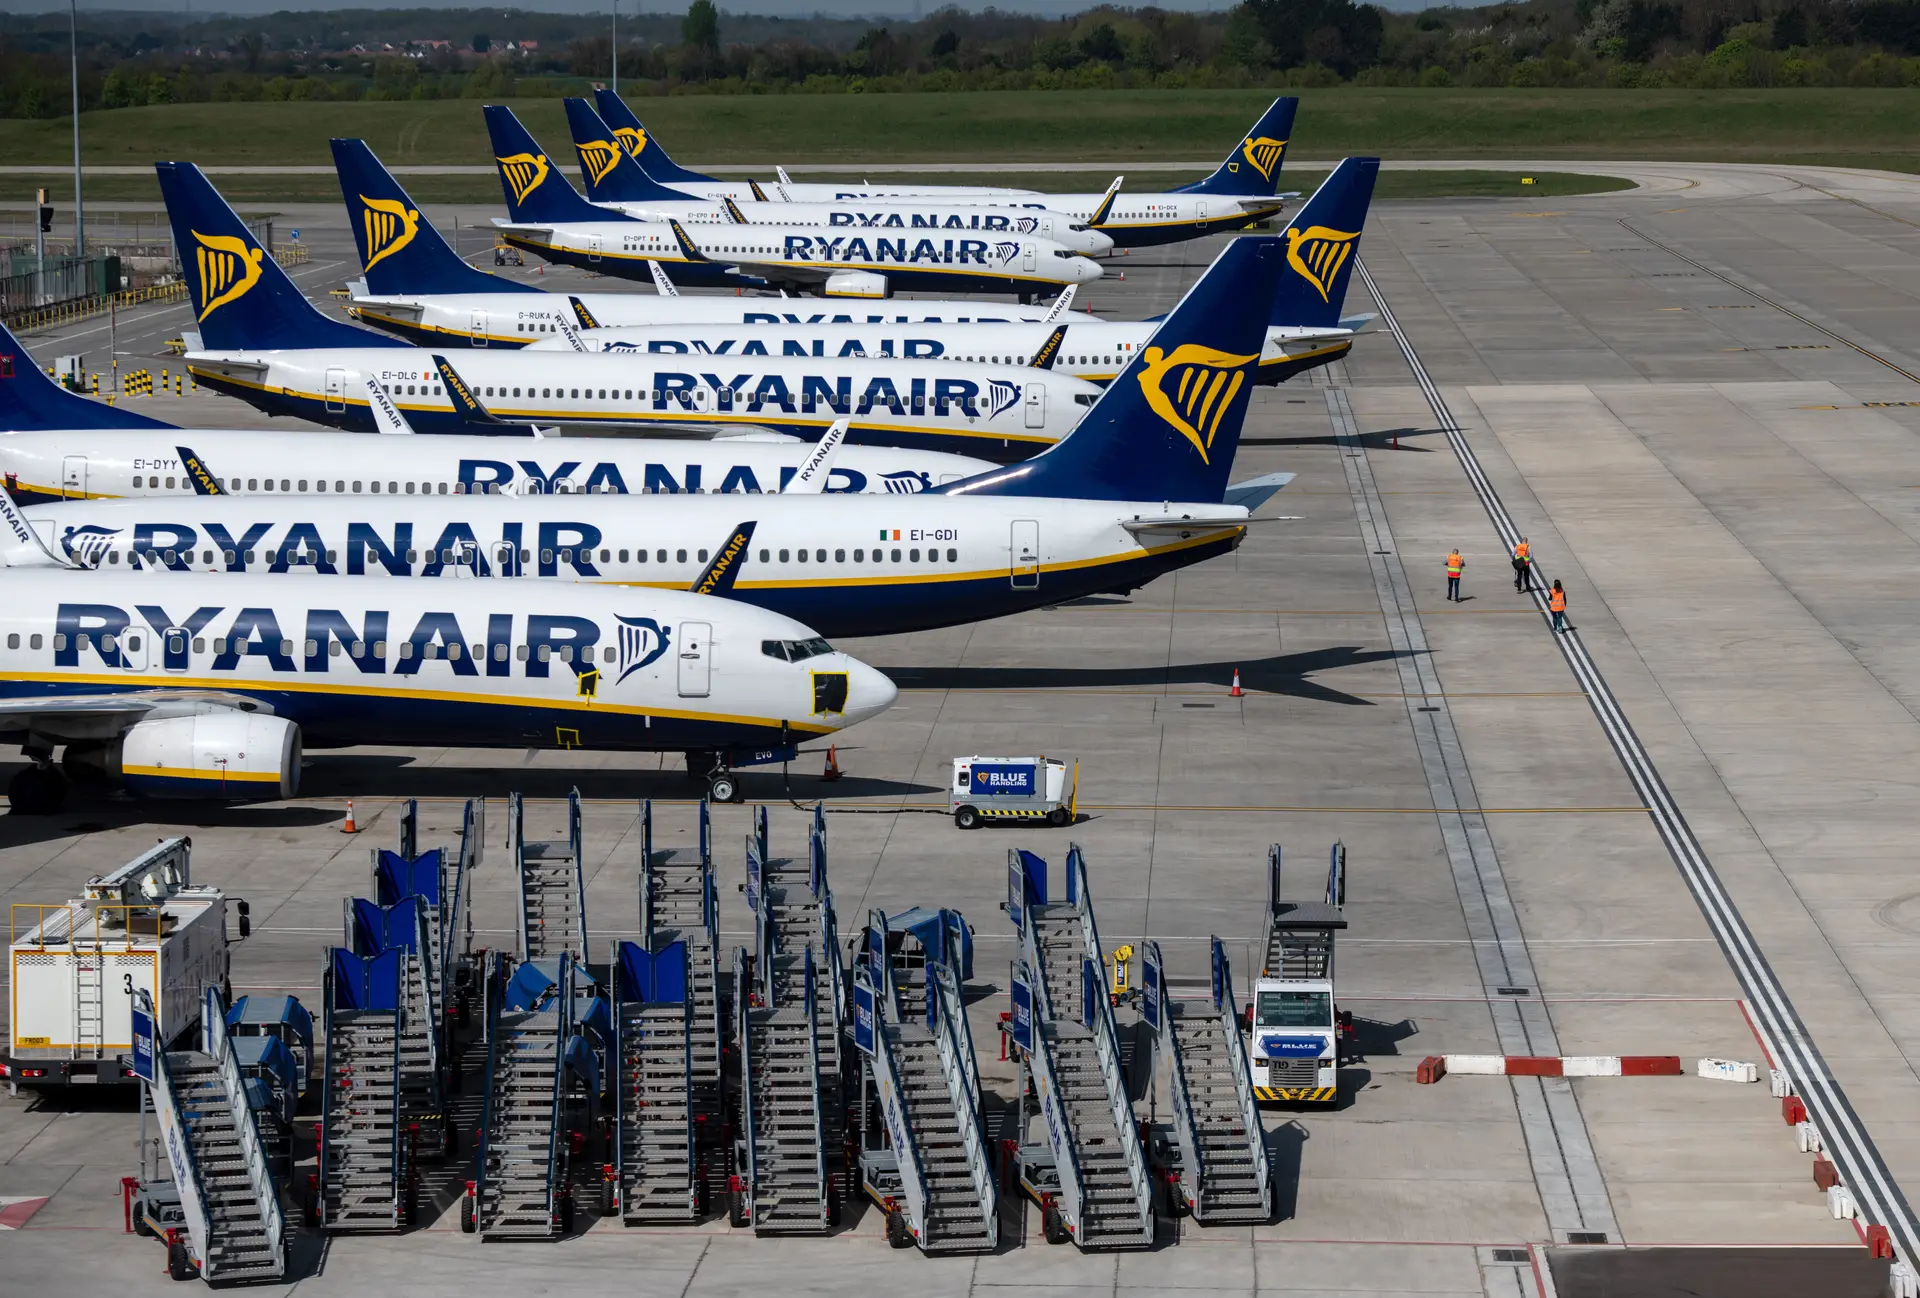 Greves em Espanha? Ryanair espera "zero perturbações"